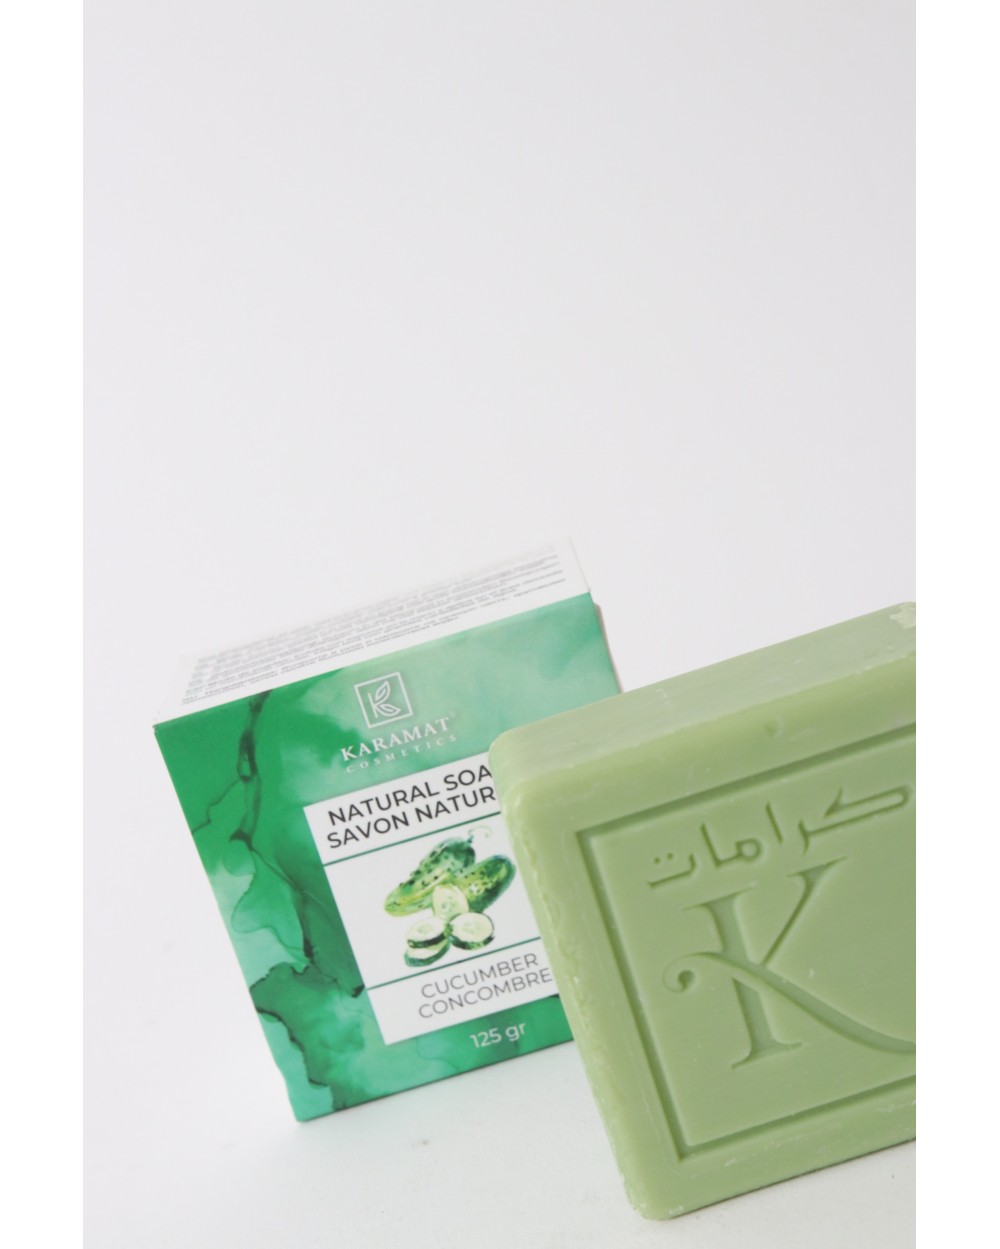 Karamat Cucumber natural soap 125 g